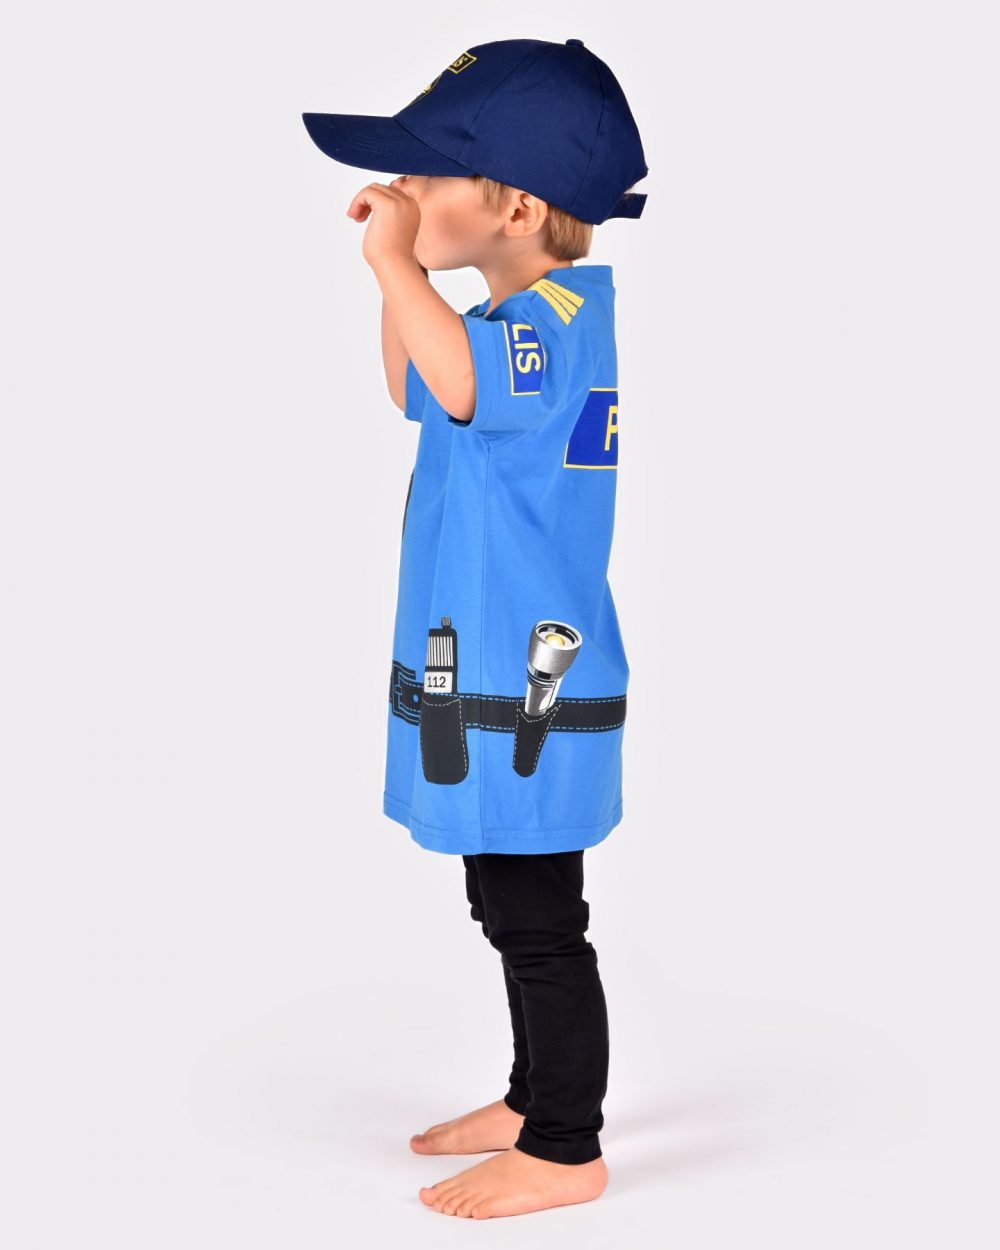 pojke som bär en blå poliskeps och blå polist-shirt visas från sidan